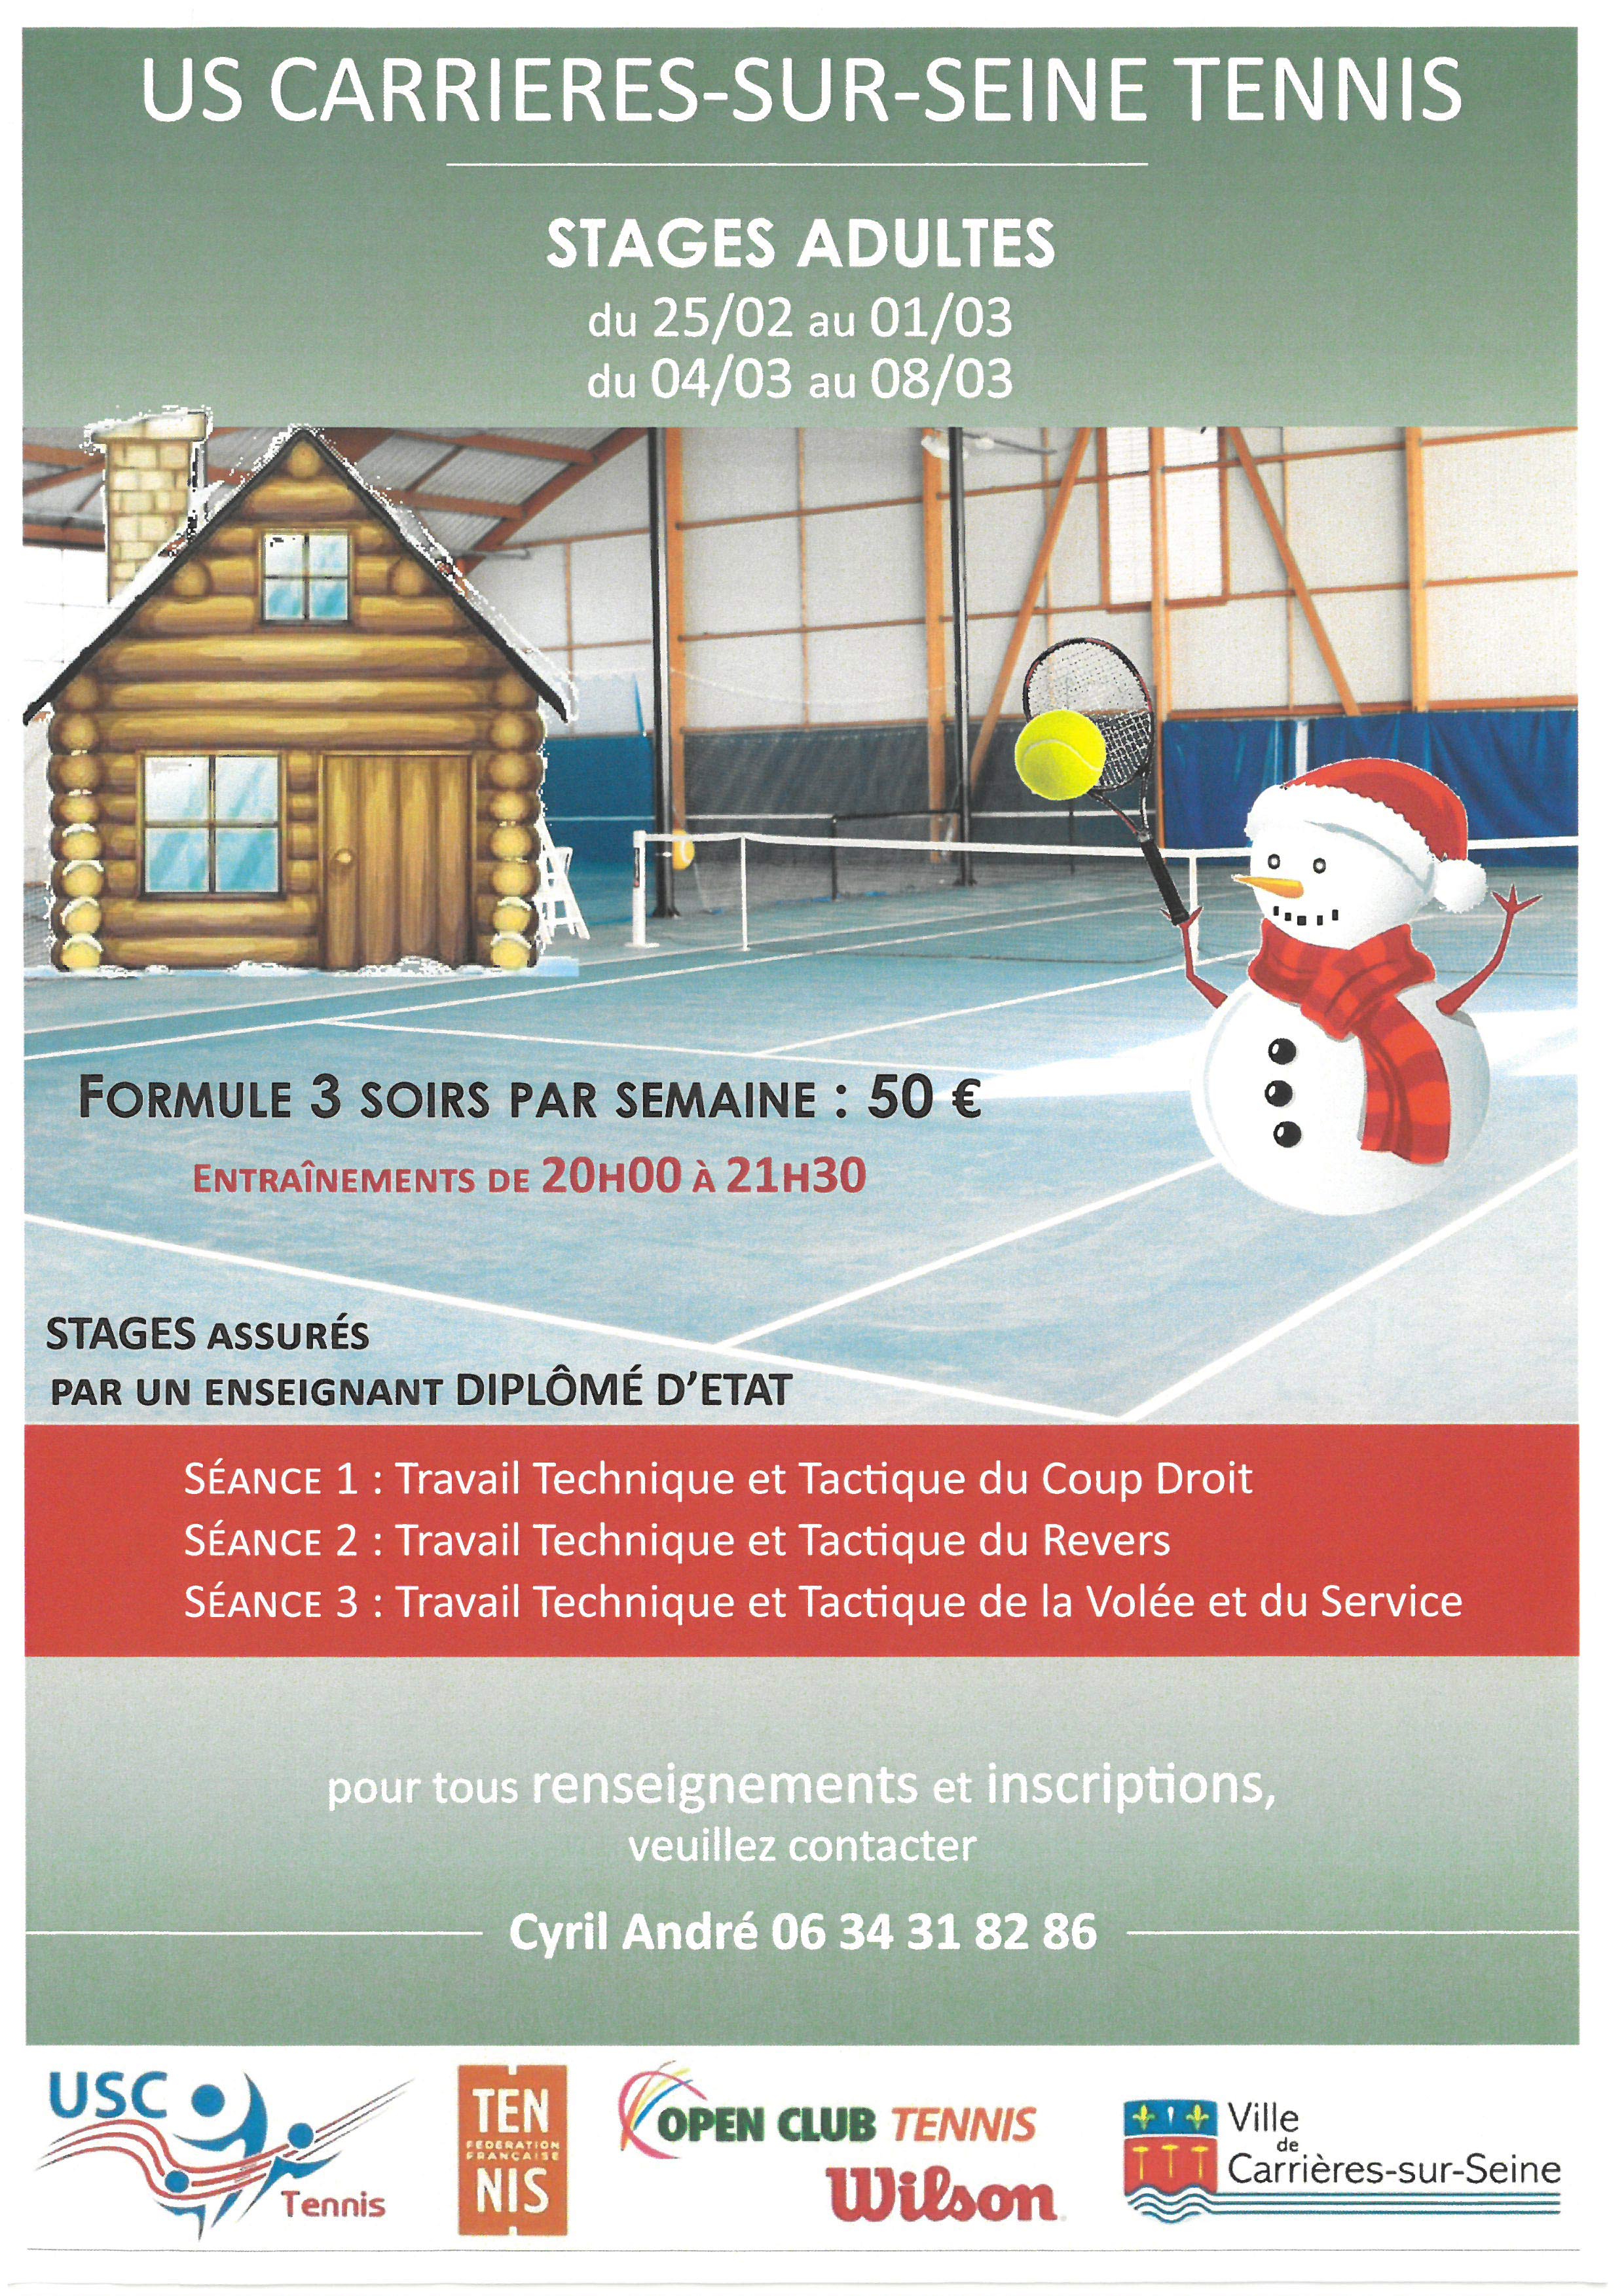 USC Tennis Carrières-sur-Seine